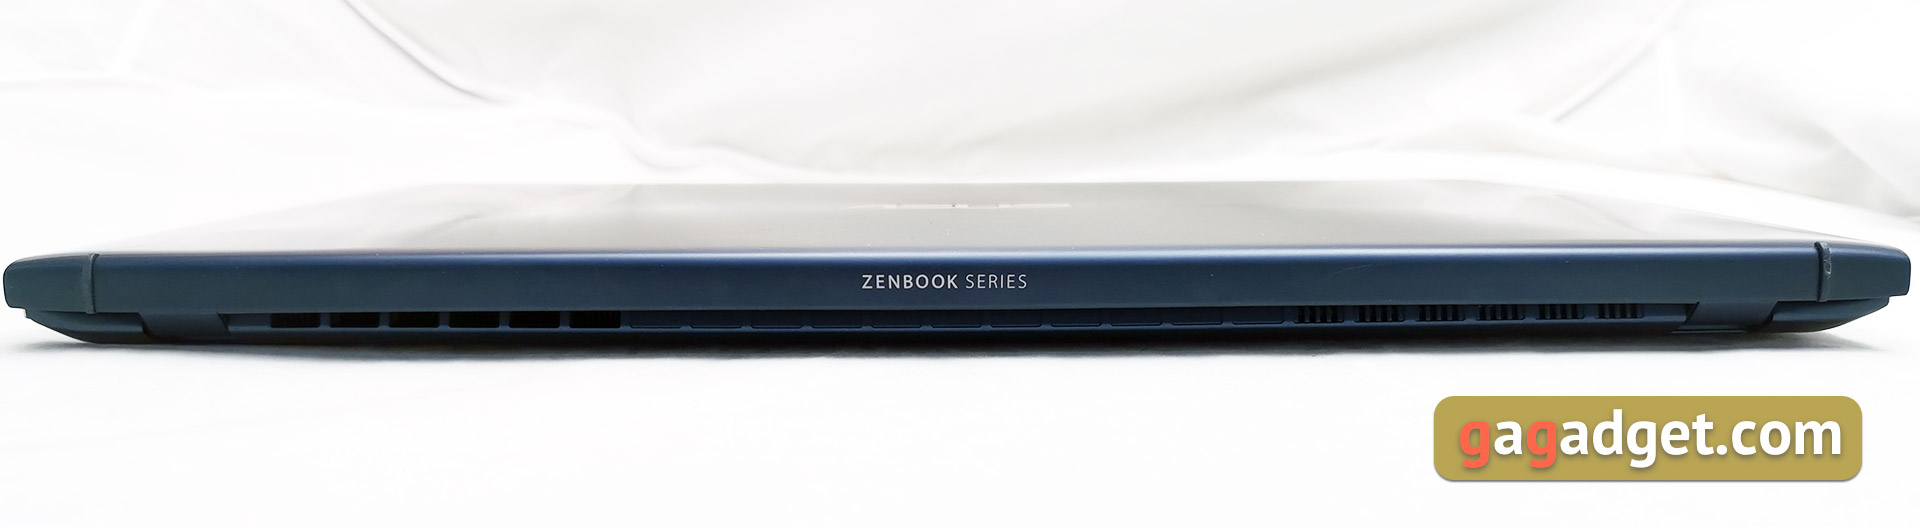 Обзор ASUS ZenBook 15 UX534FTС: компактный ноутбук с GeForce GTX 1650 и Intel 10-го поколения-14